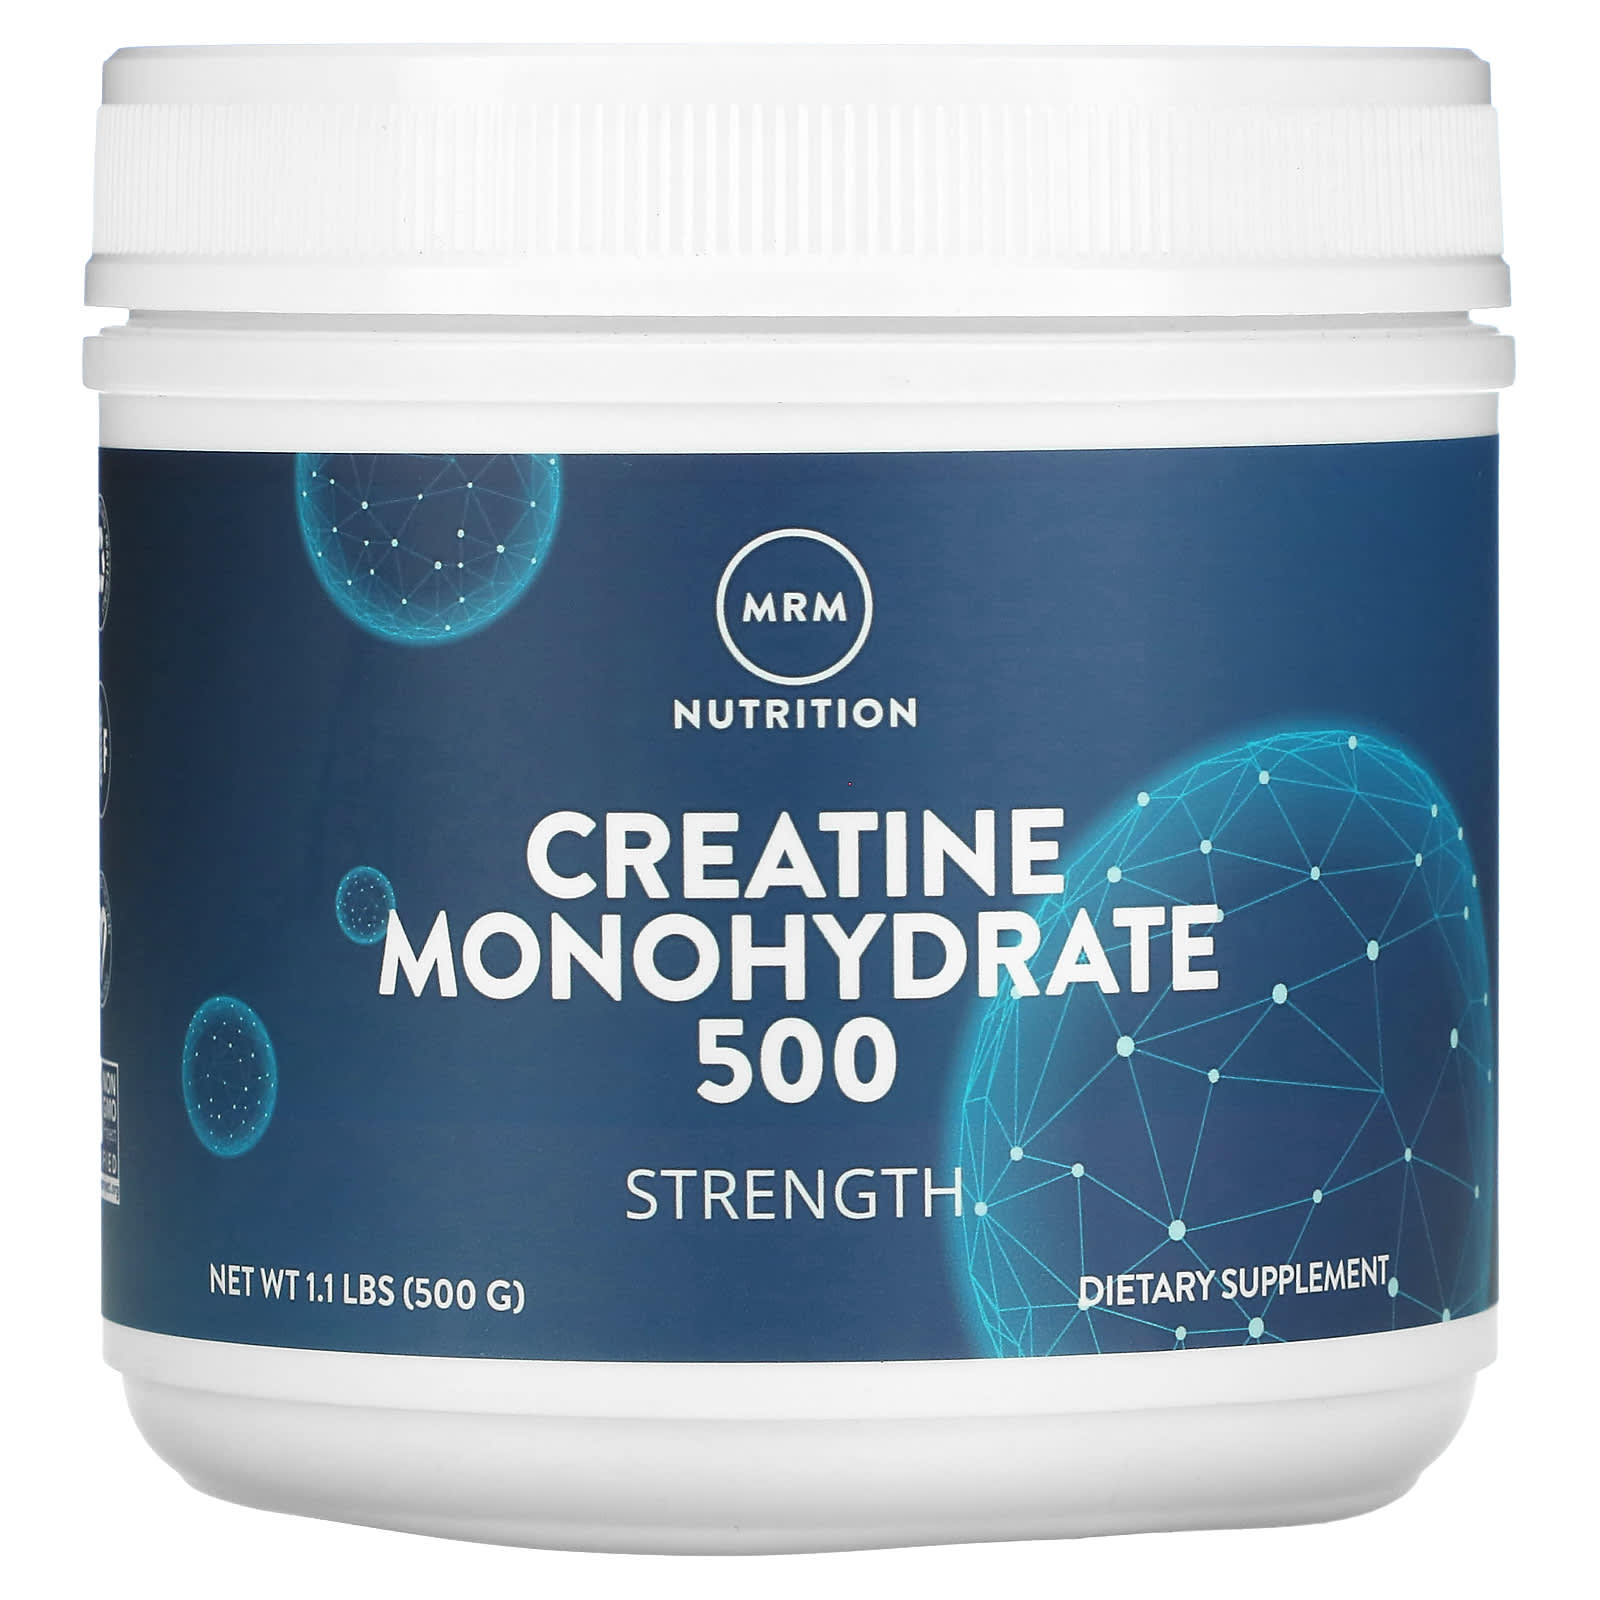 Моногидрат Креатина 500 MRM Nutrition, 500 г prolab nutrition моногидрат креатина 2 2 фунта 1000 г